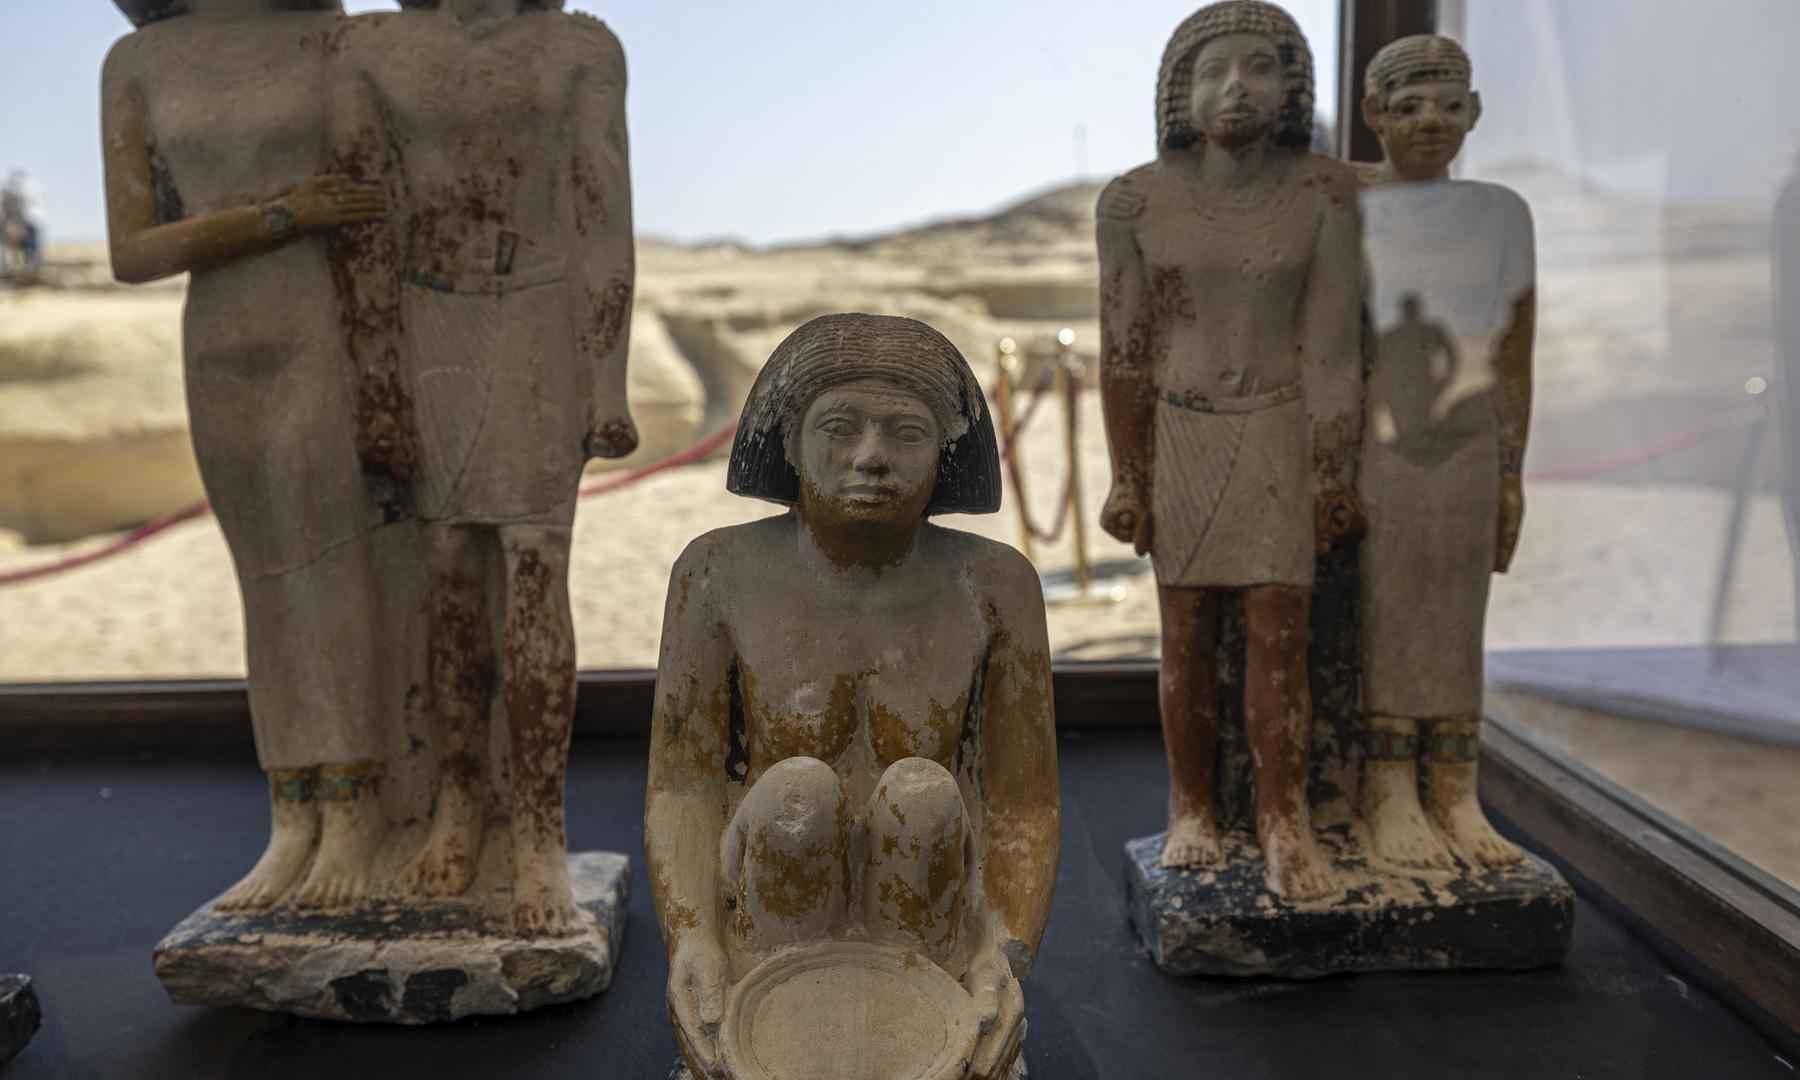 Egito descobre tumbas de faraós e múmia de mais de 4 mil anos - Khaled DESOUKI / AFP

